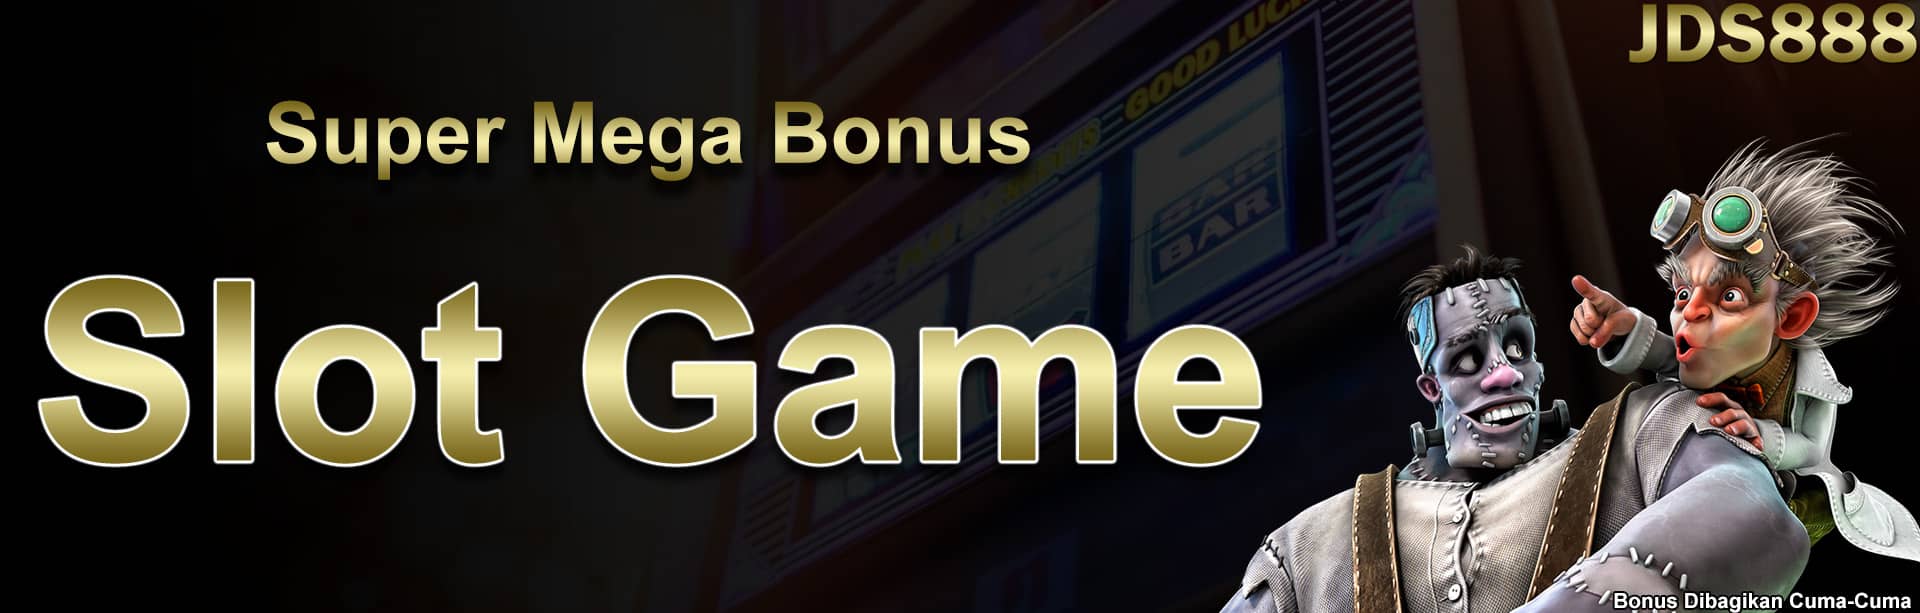 Super Mega Bonus Slot Game